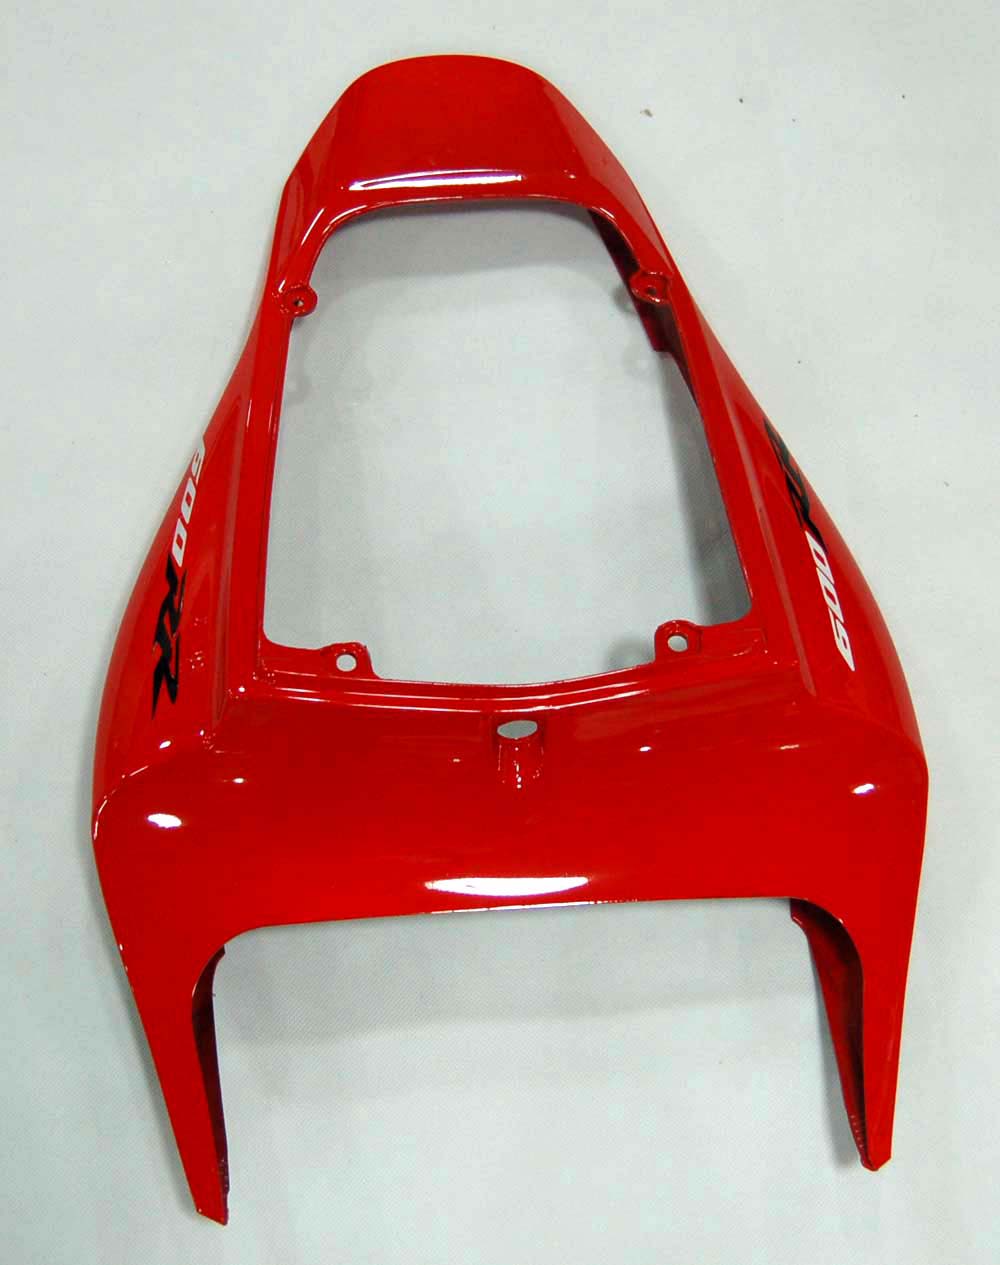 2009-2012 Honda CBR600RR Red&Black Amotopart Fairing Kit